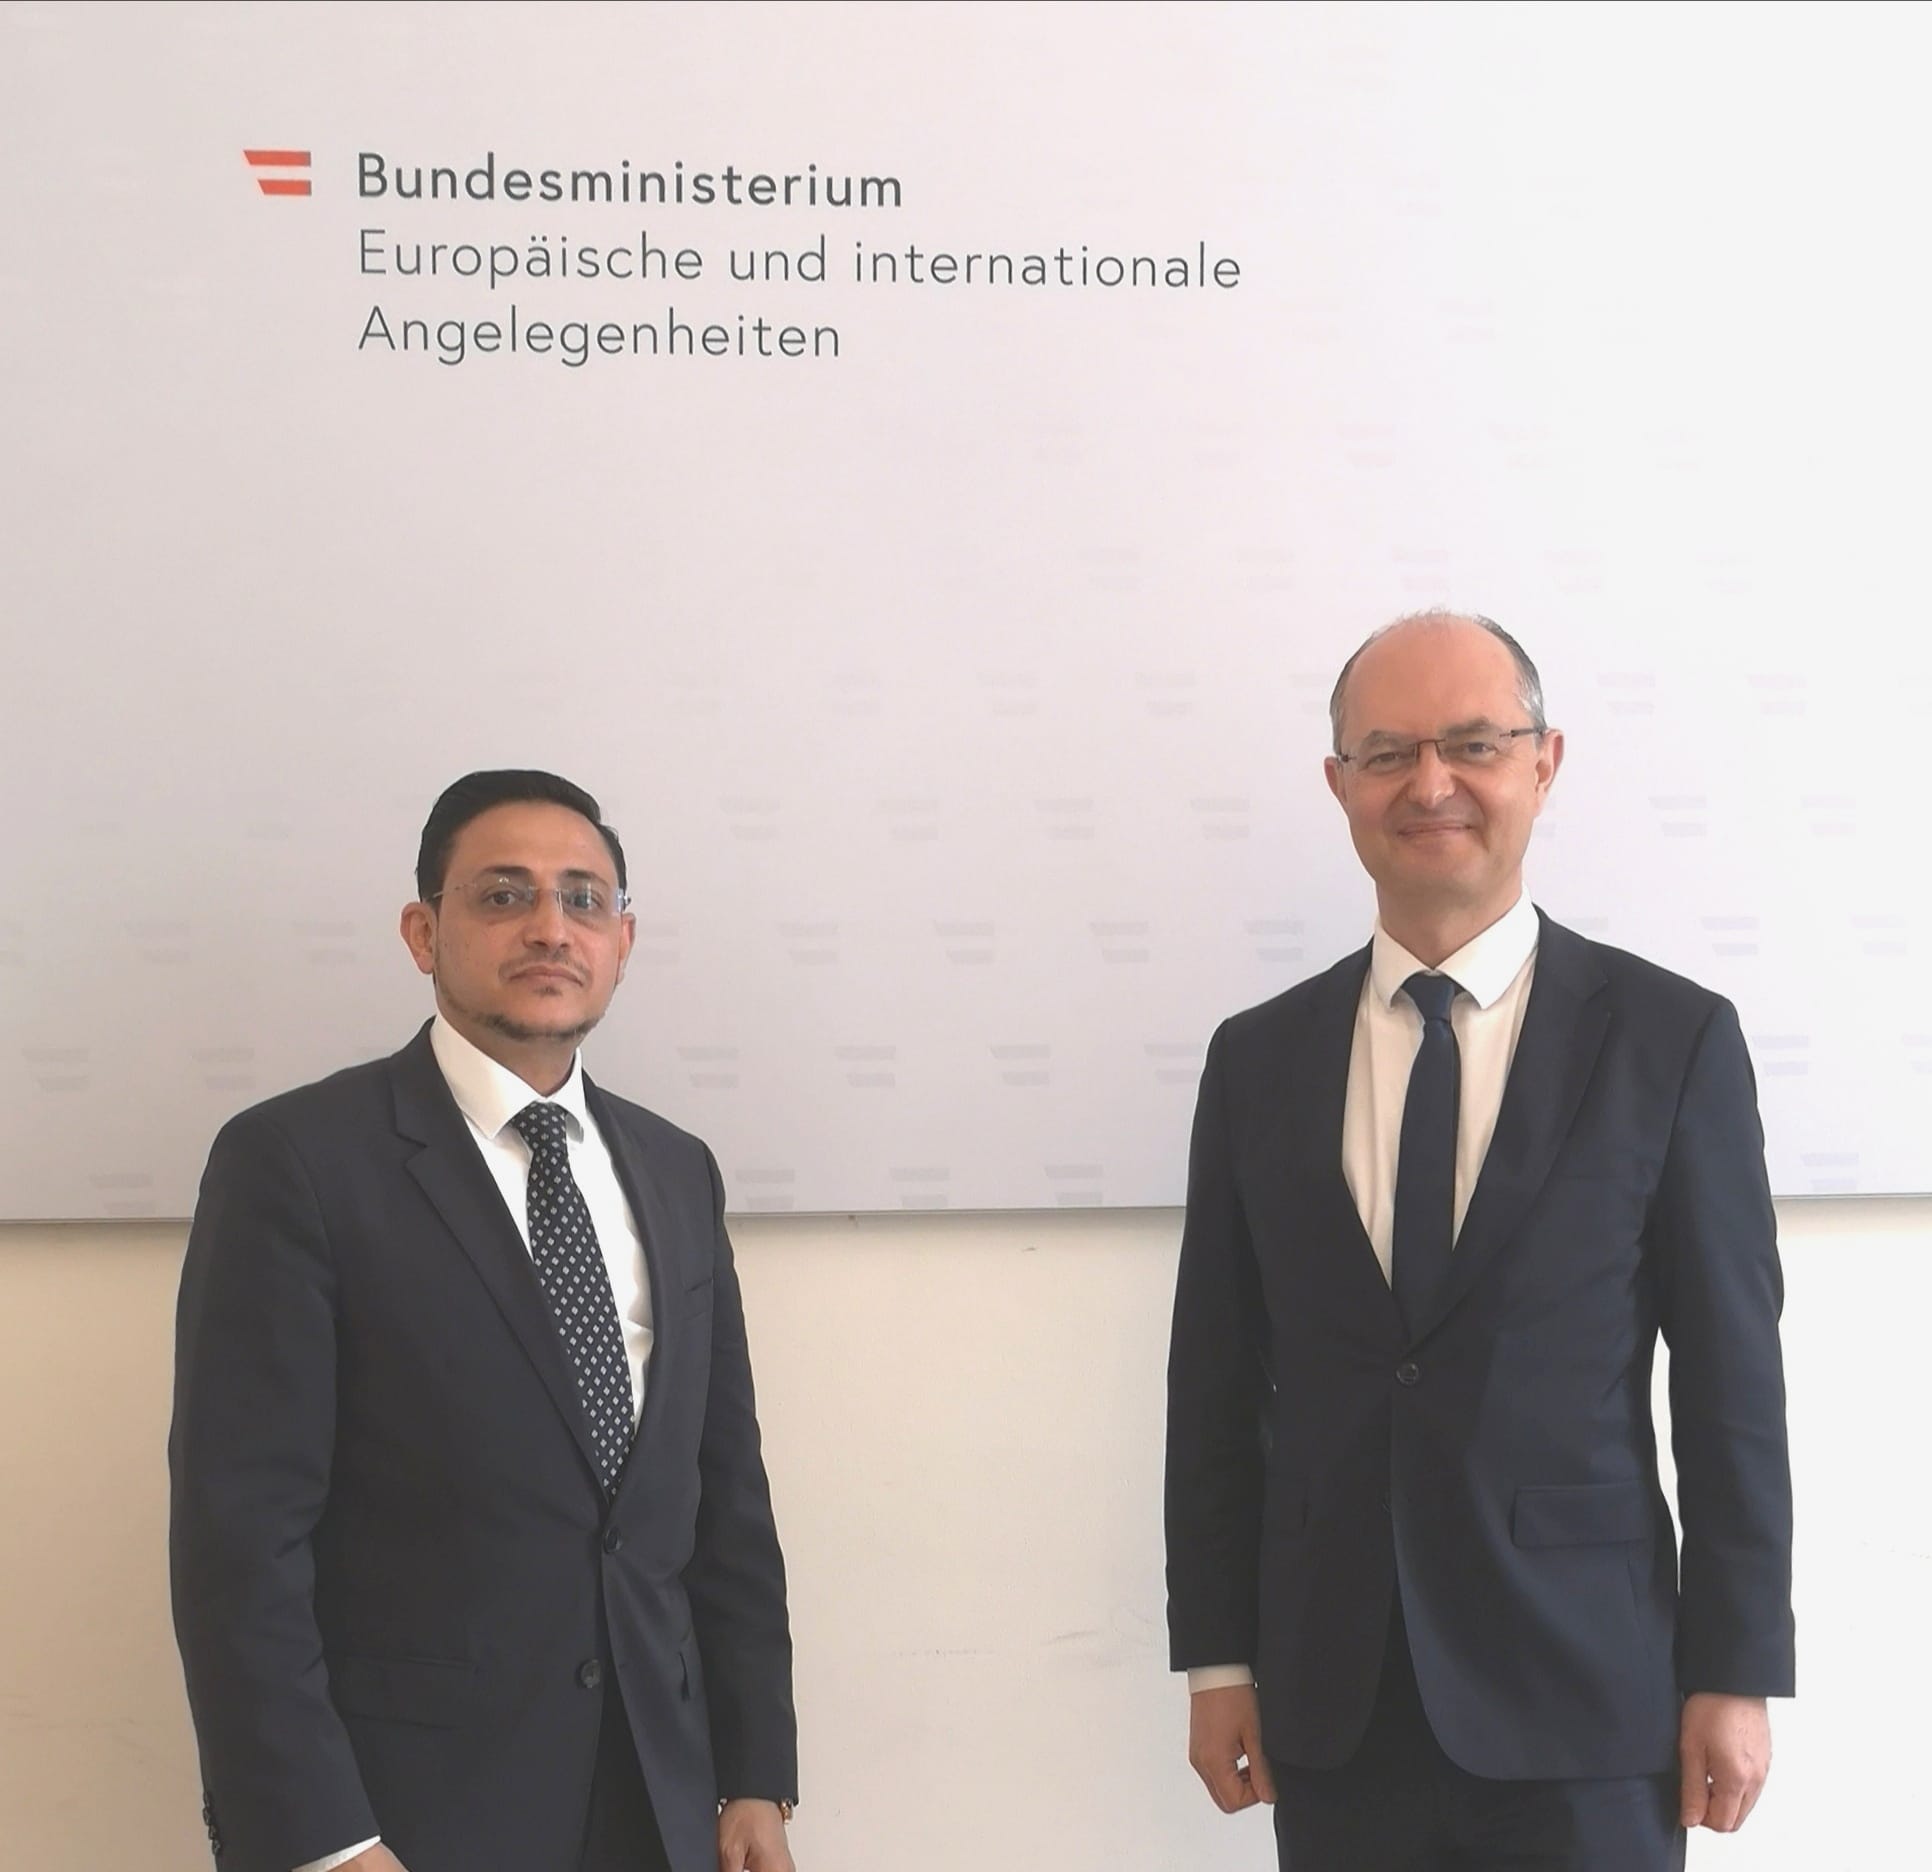 السفير شجاع الدين يبحث مع مسؤول نمساوي تعزيز وتطوير العلاقات الثنائية